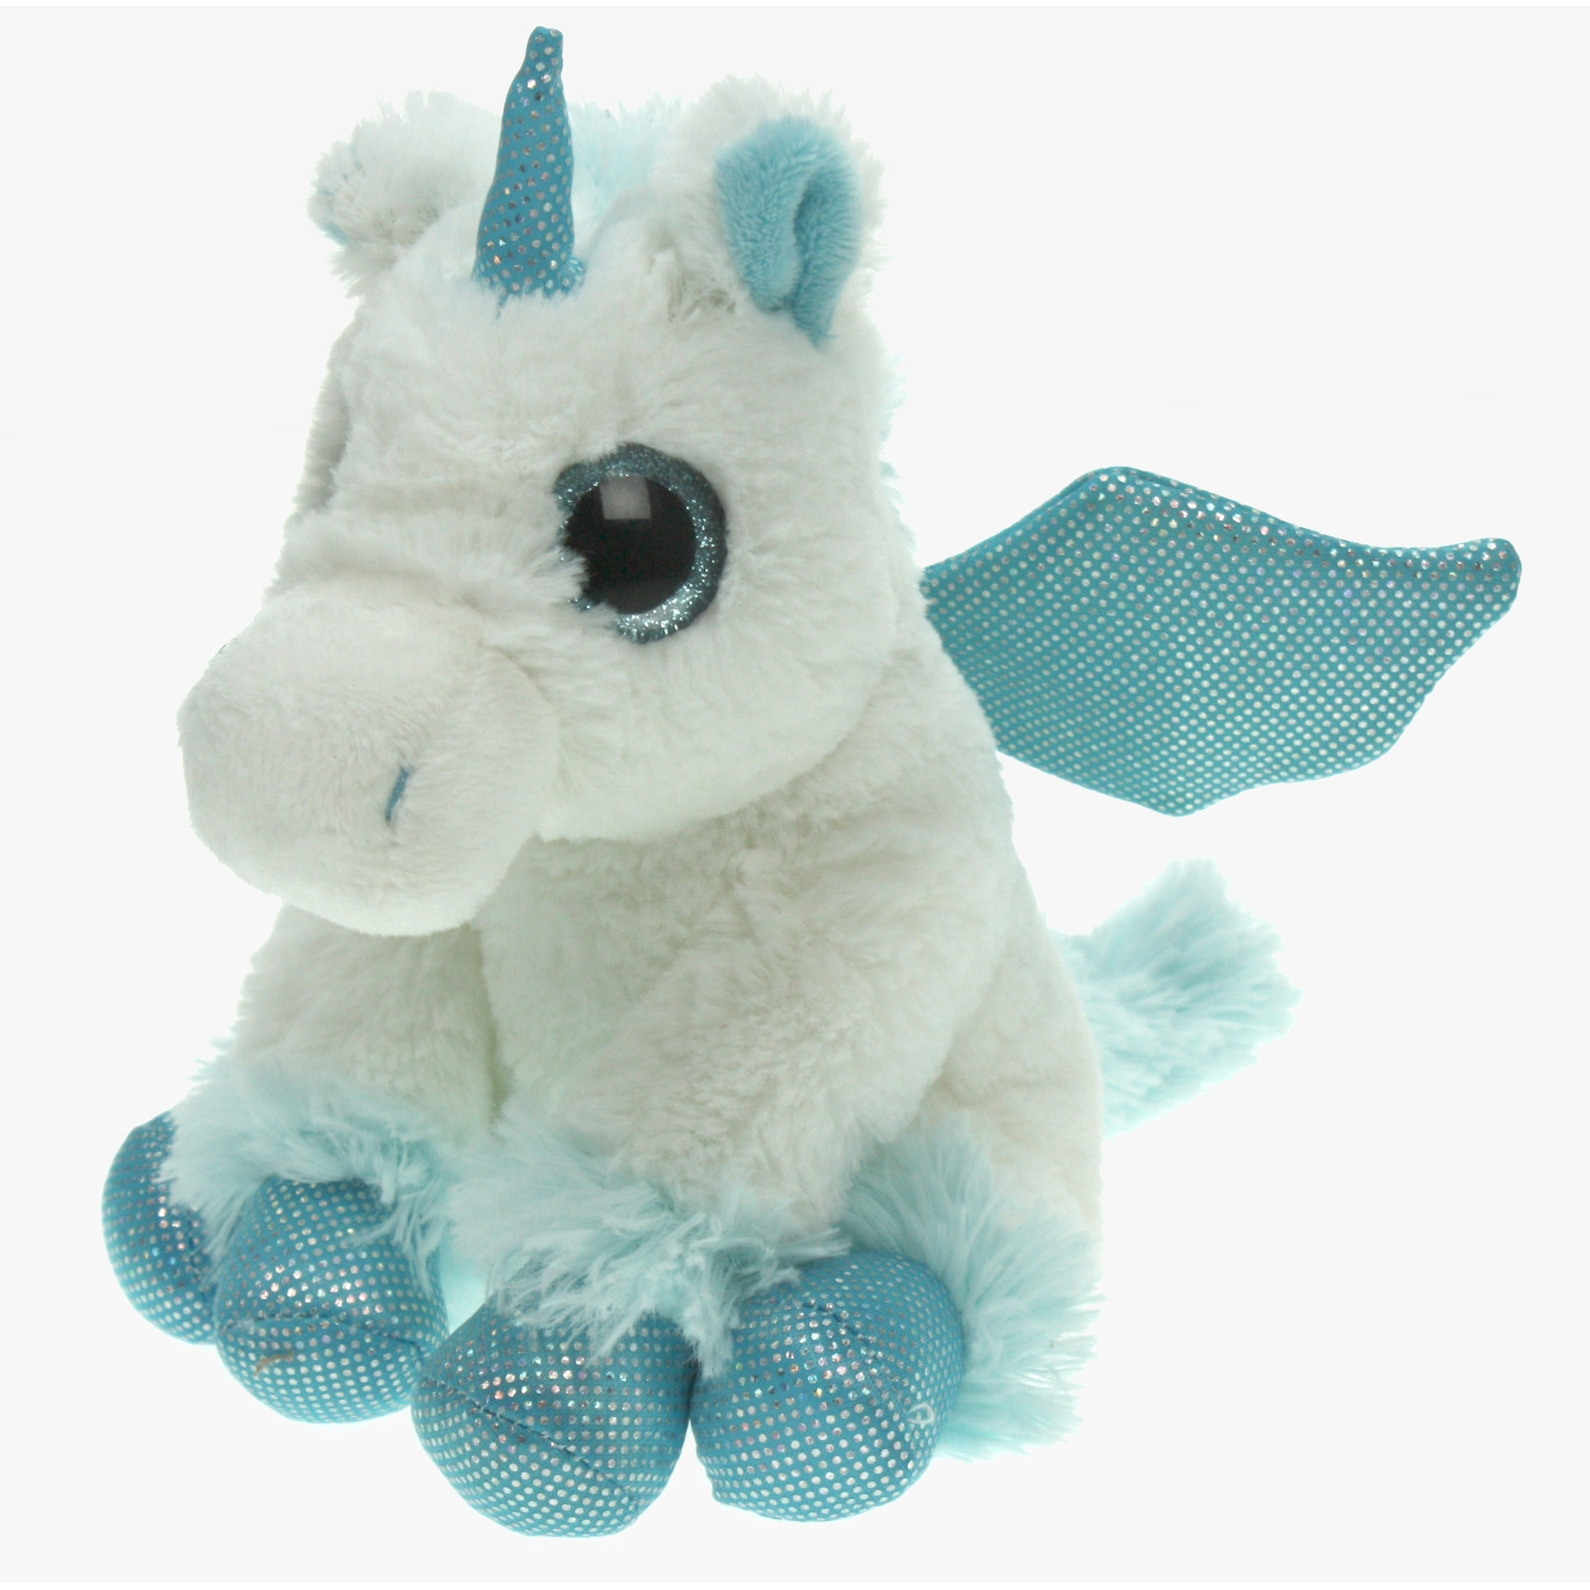 Pluche knuffel dieren Unicorn/eenhoorn wit/blauw van 20 cm -